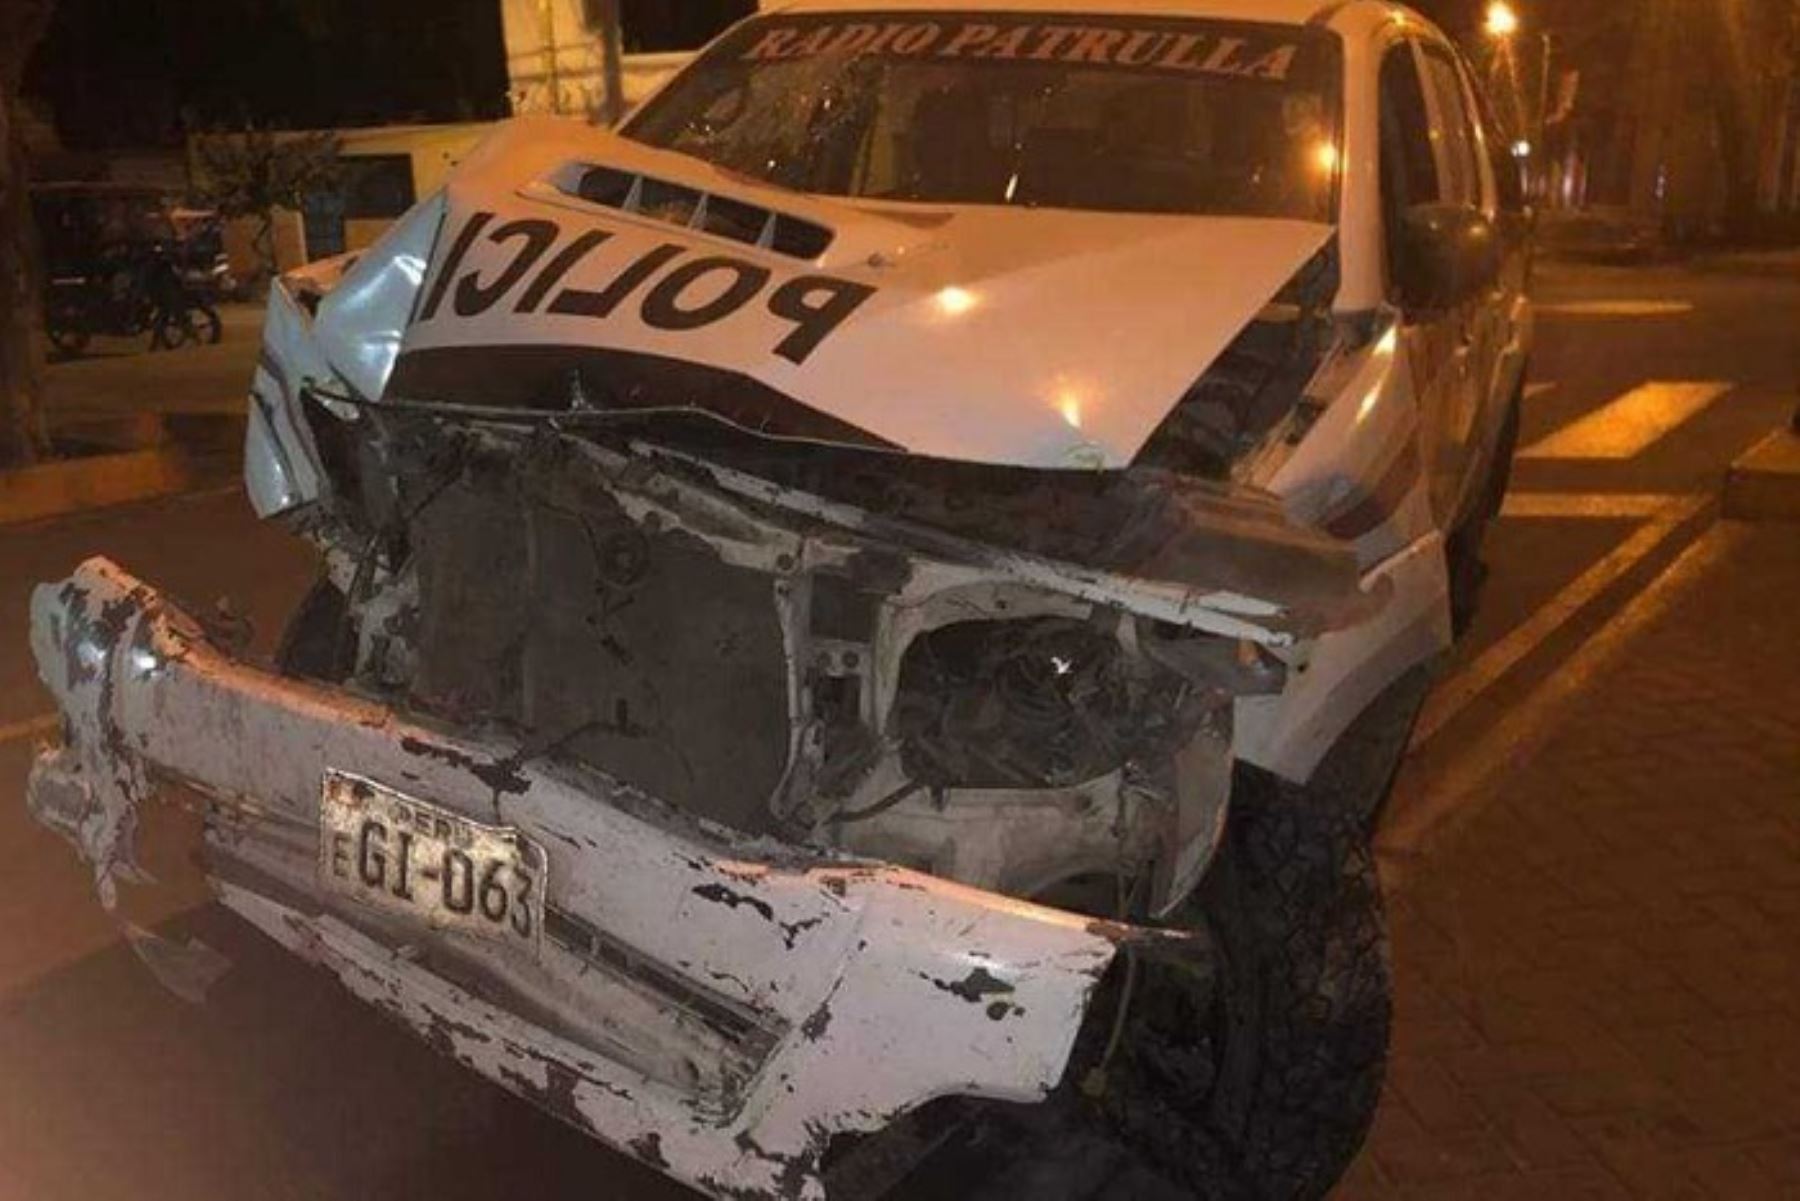 Dos efectivos policiales resultaron heridos luego que el patrullero en el que se desplazaban impactara violentamente contra una vivienda en la provincia de Casma, región Áncash; informaron las autoridades locales.